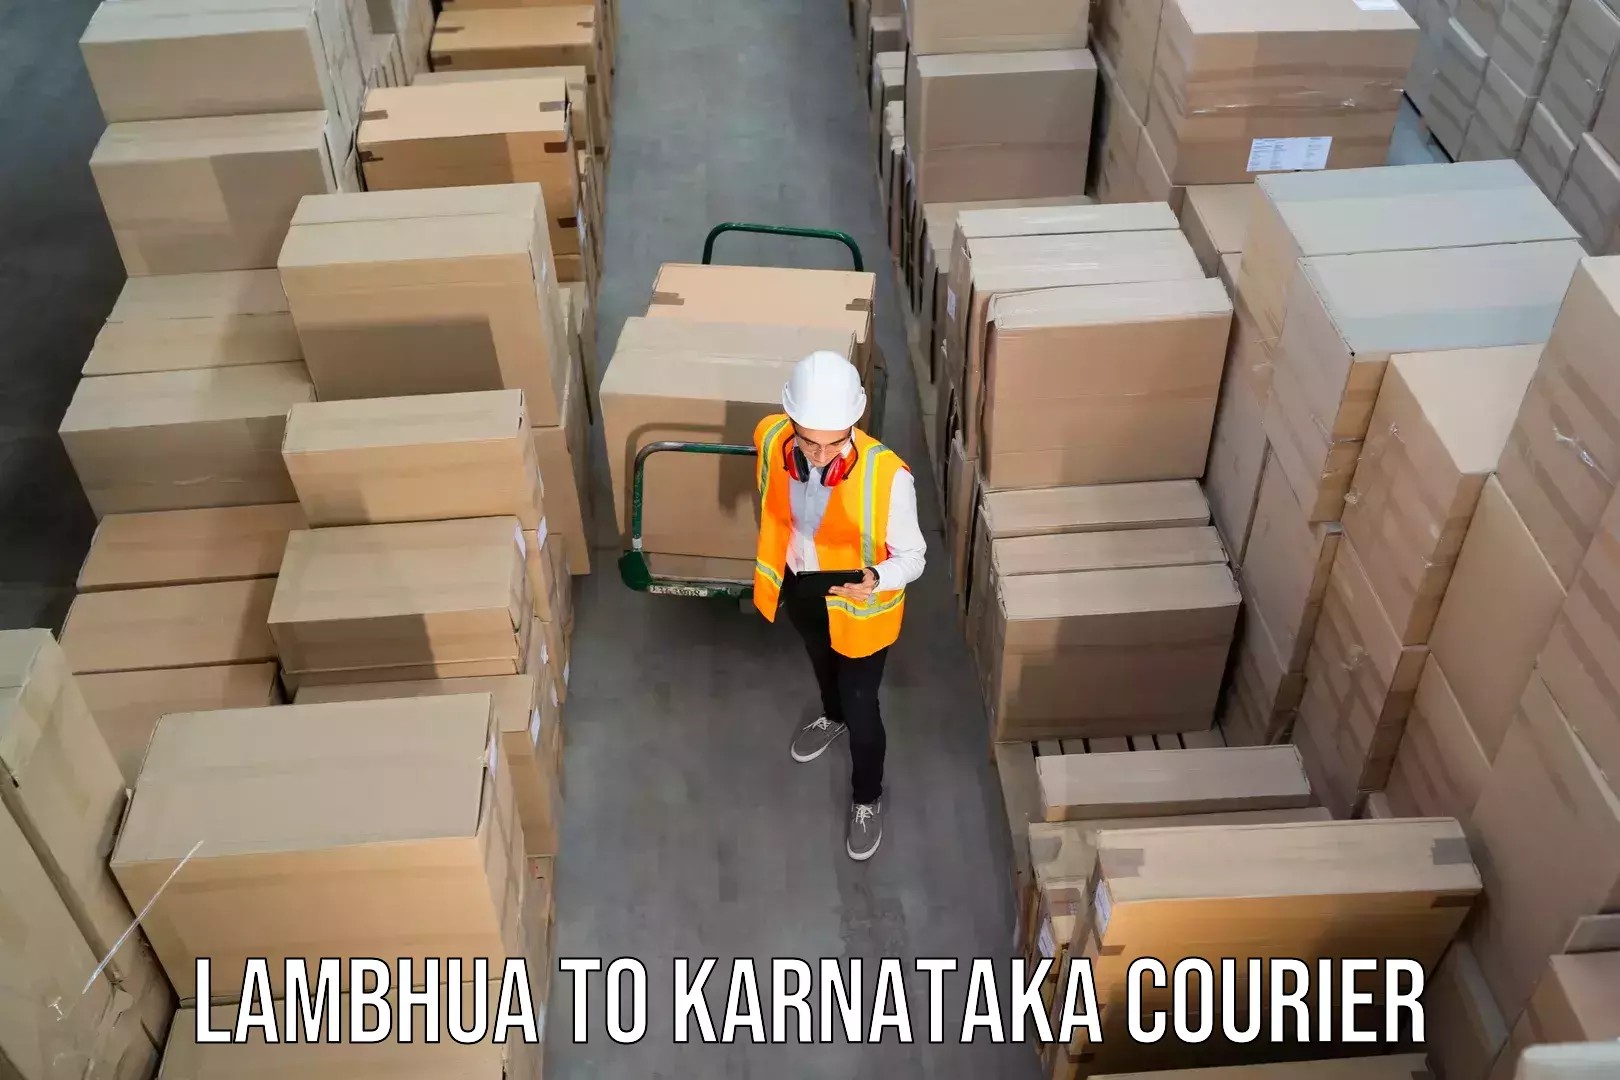 Express courier capabilities Lambhua to Ankola